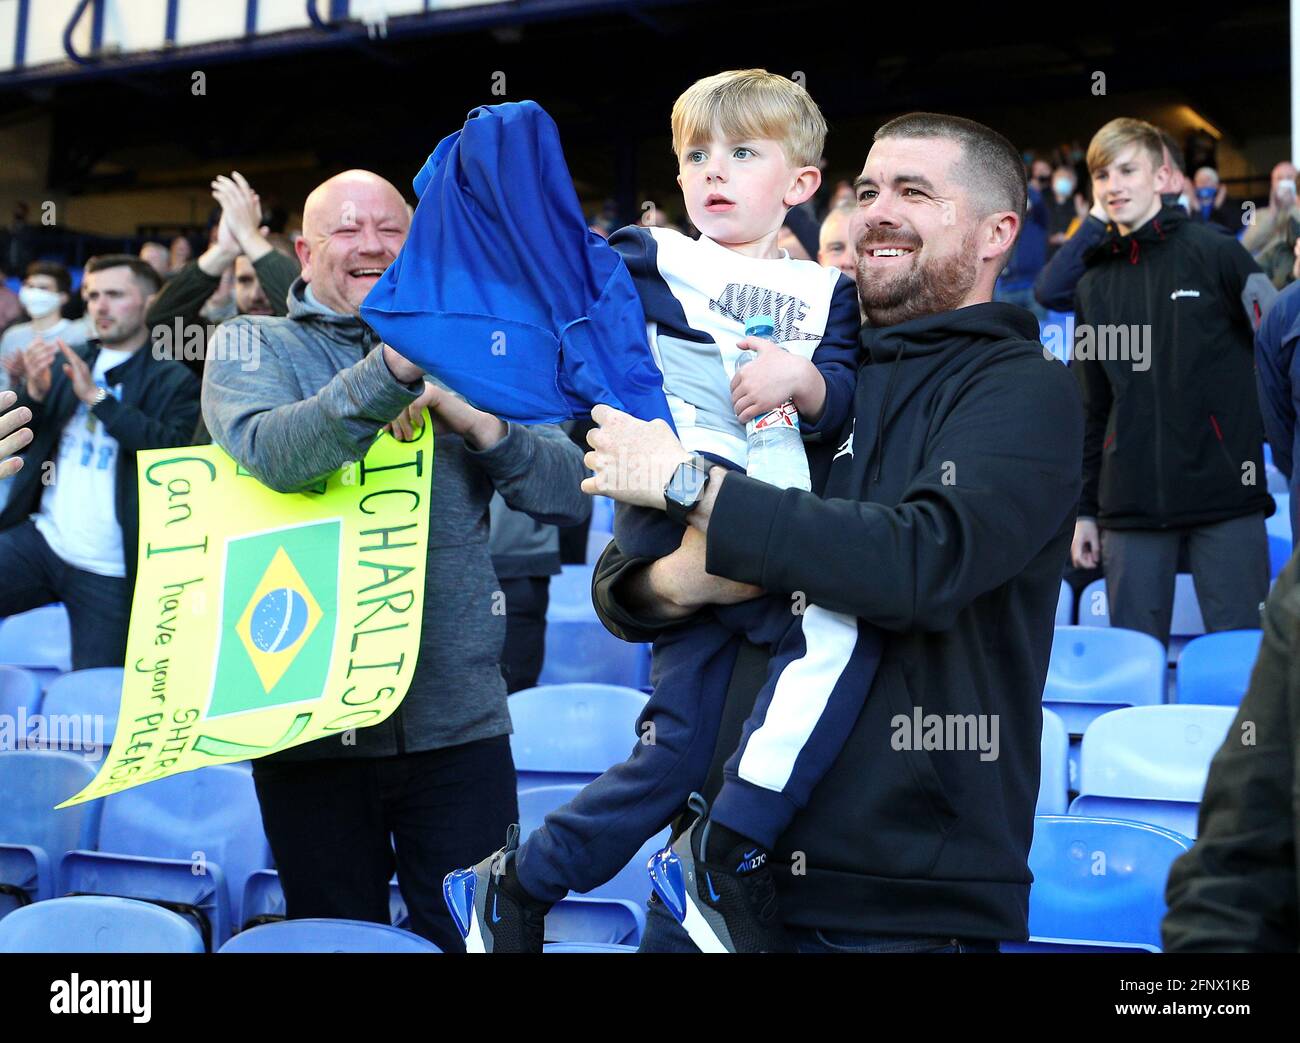 Ein junger Everton-Fan feiert mit Evertons Richarlison's (nicht abgebildet) Shirt nach dem letzten Pfiff während des Premier League-Spiels im Goodison Park, Liverpool. Bilddatum: Mittwoch, 19. Mai 2021. Stockfoto